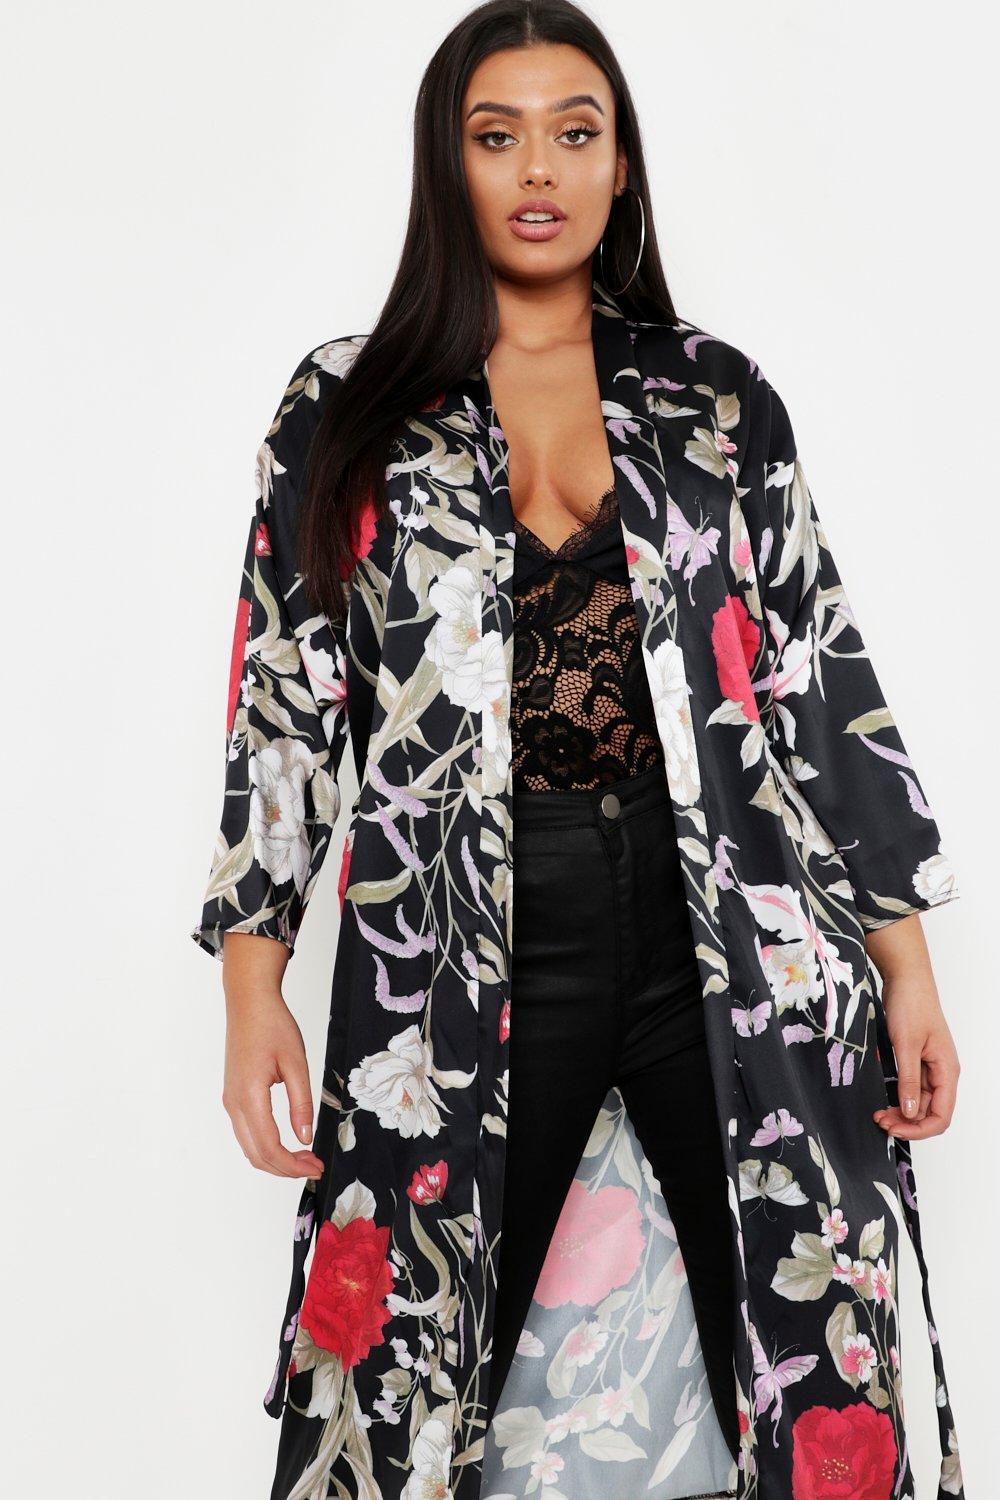 Boohoo Womens Plus Size Floral Kimono Ebay 